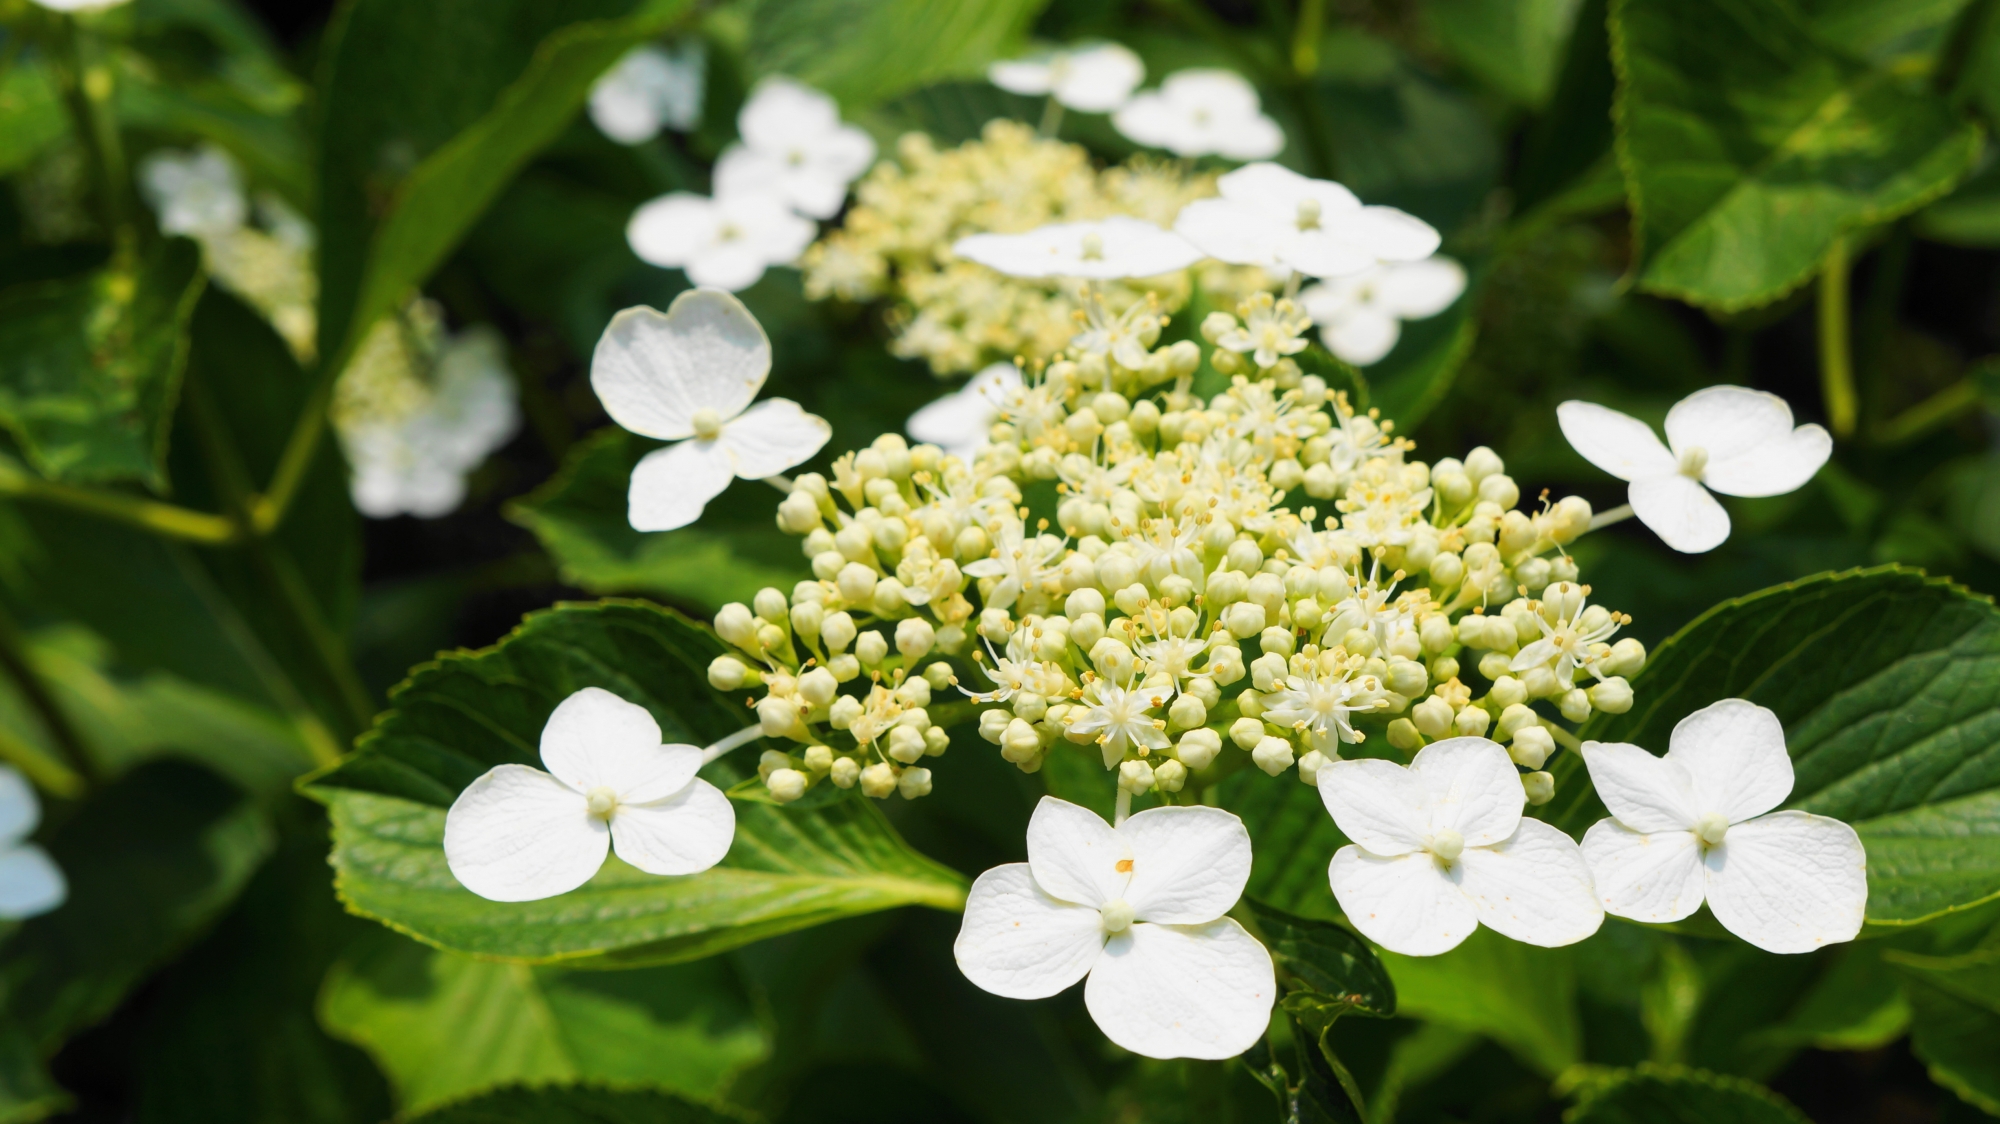 白く輝く花びらをいっぱいに広げて咲き誇るガクアジサイ